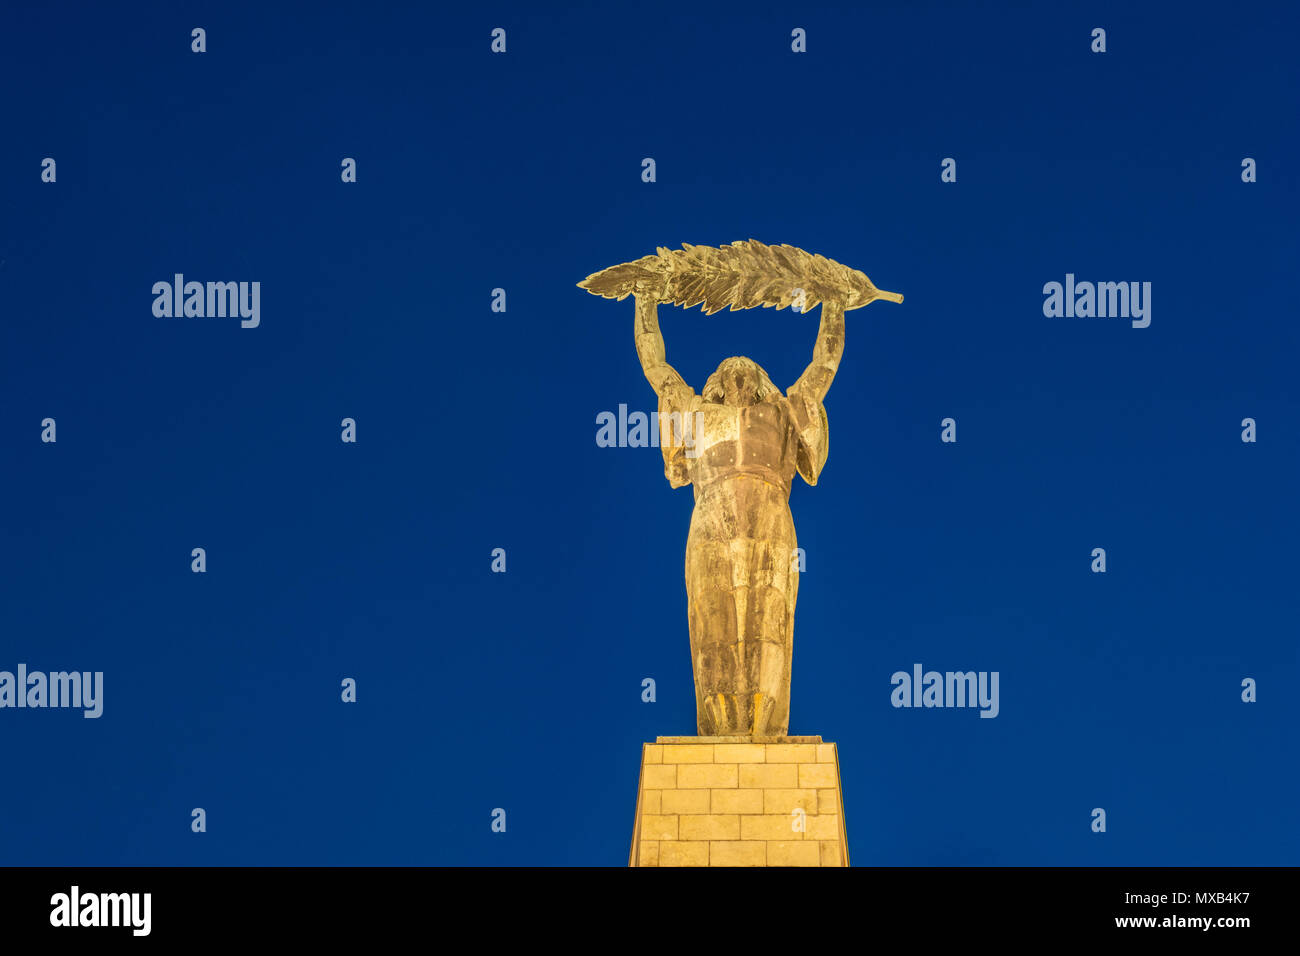 La Estatua de la libertad o la estatua de la libertad en la noche del monte Gellért en Budapest, Hungría. Conmemora a aquellos que sacrificaron sus vidas por la indep Foto de stock